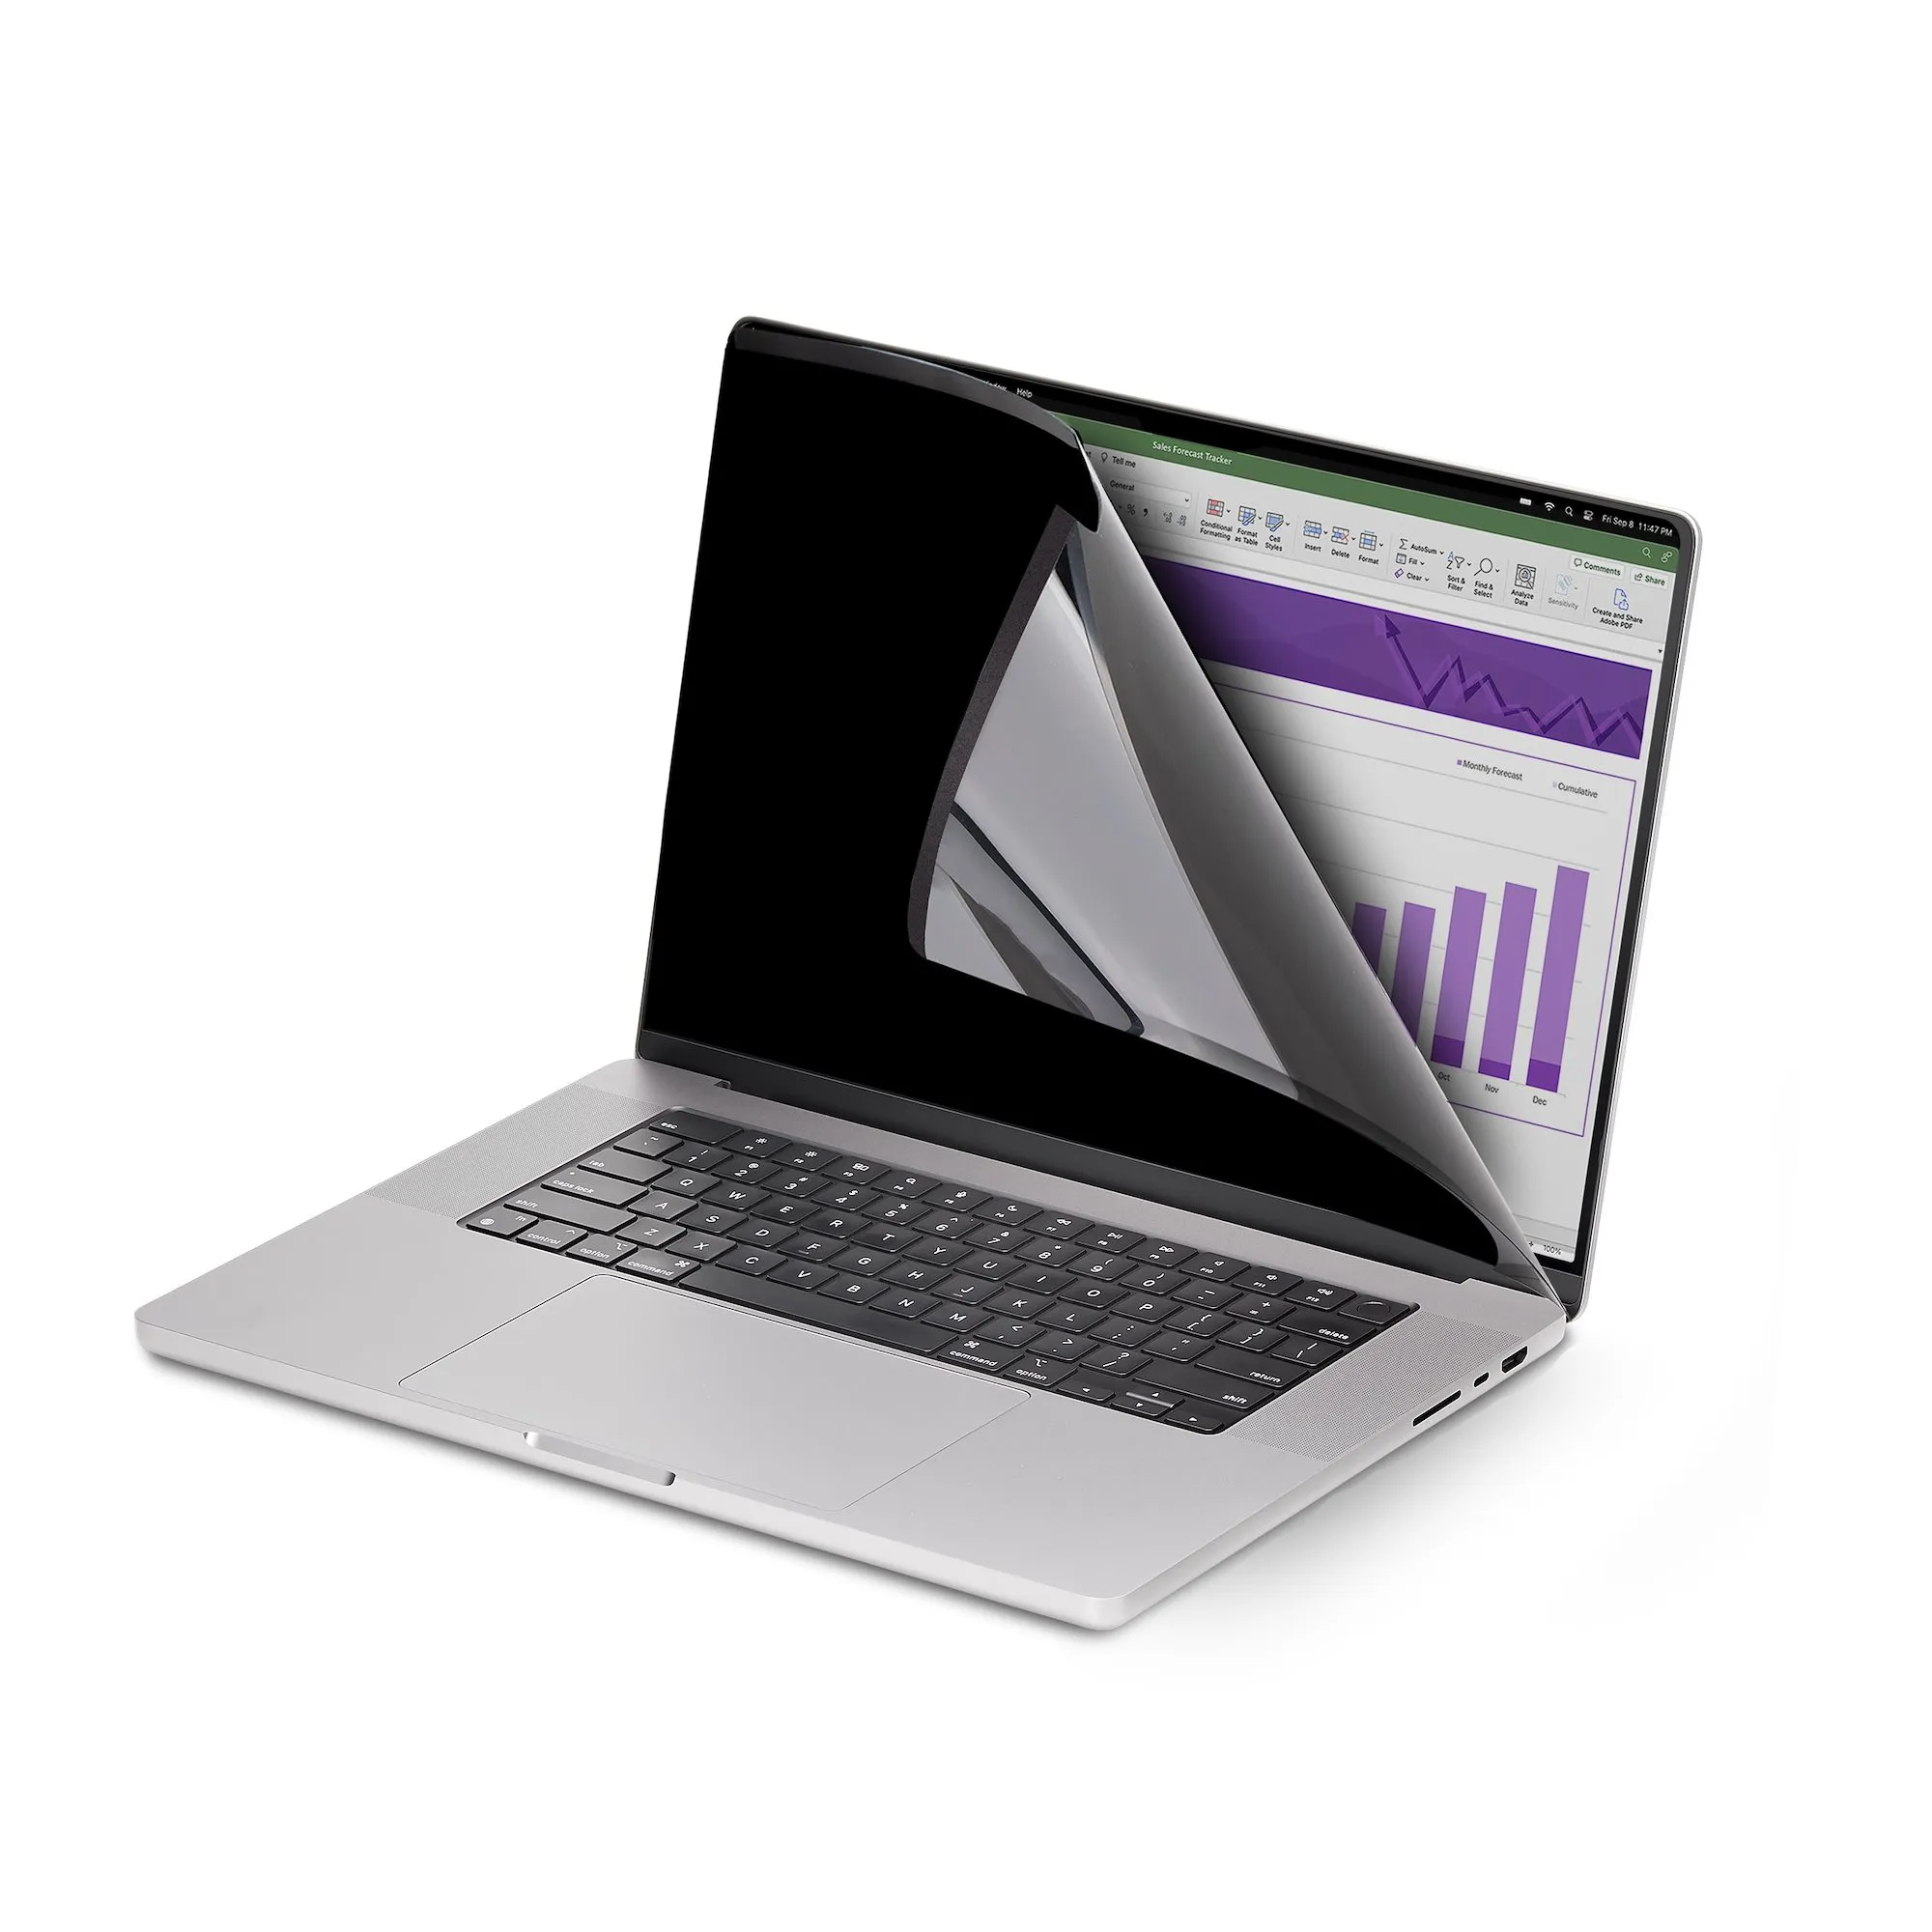 Vente StarTech.com Filtre de Confidentialité pour MacBook Pro StarTech.com au meilleur prix - visuel 4